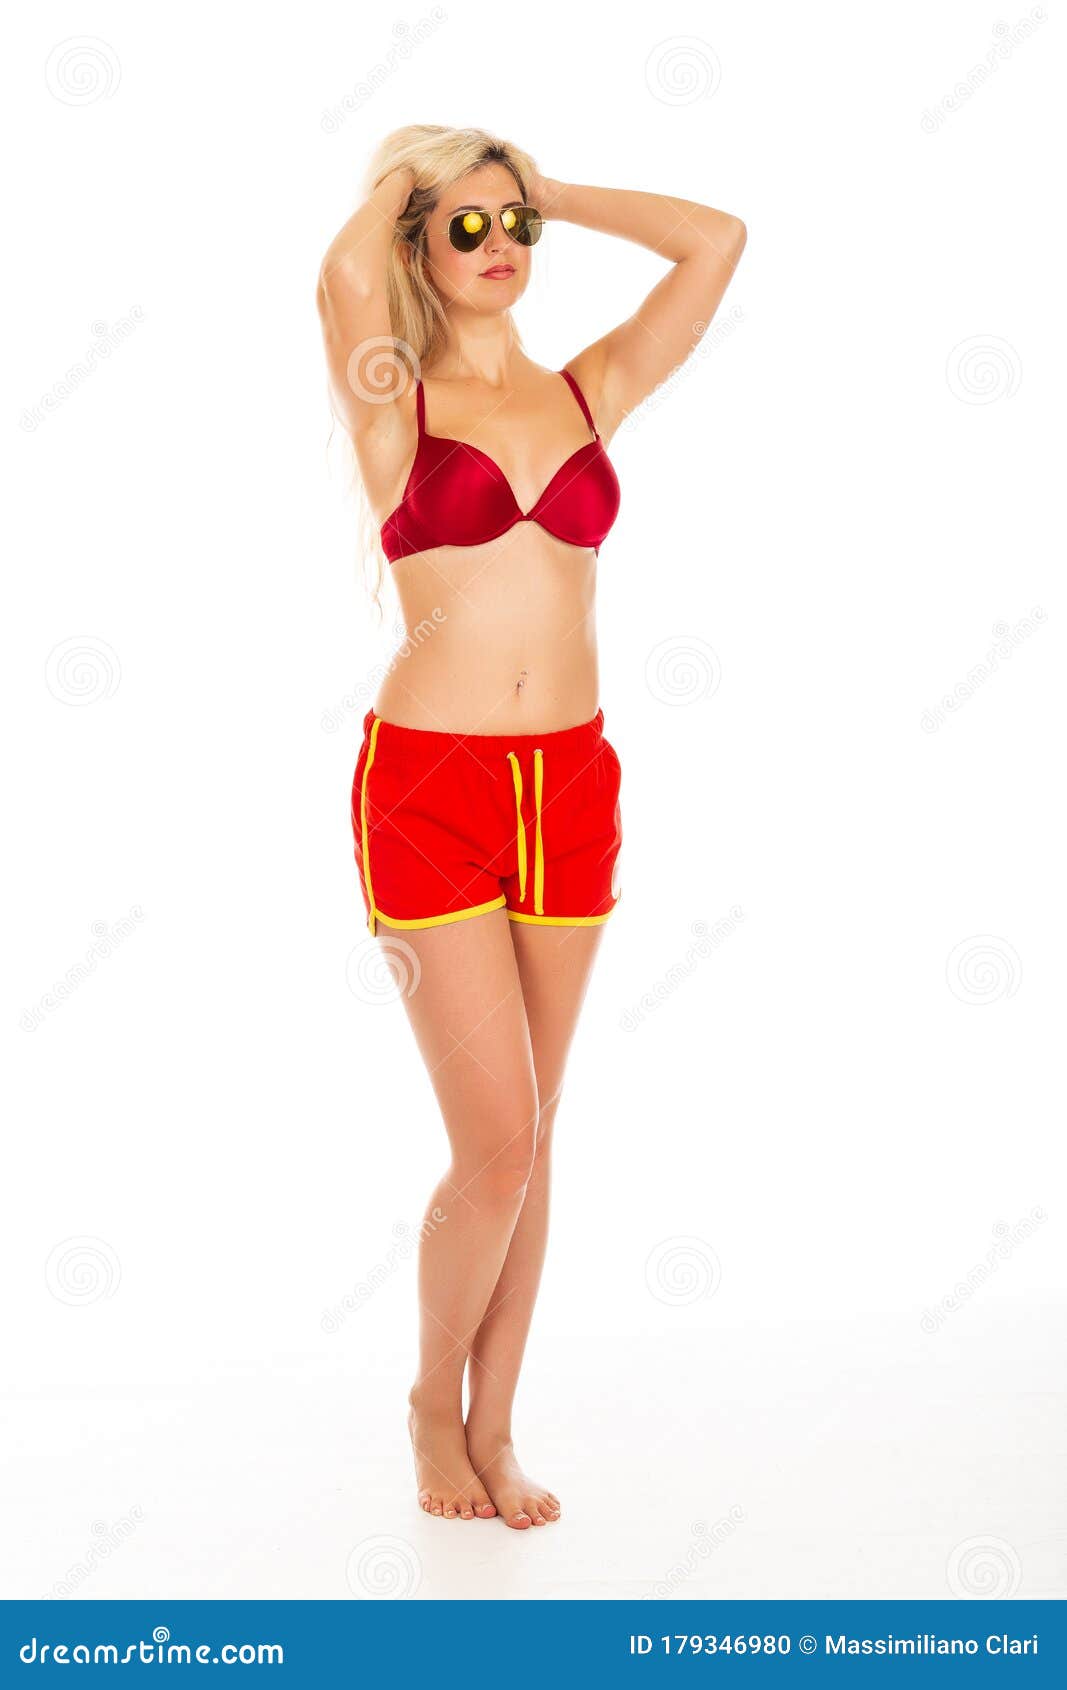 red bikini shorts